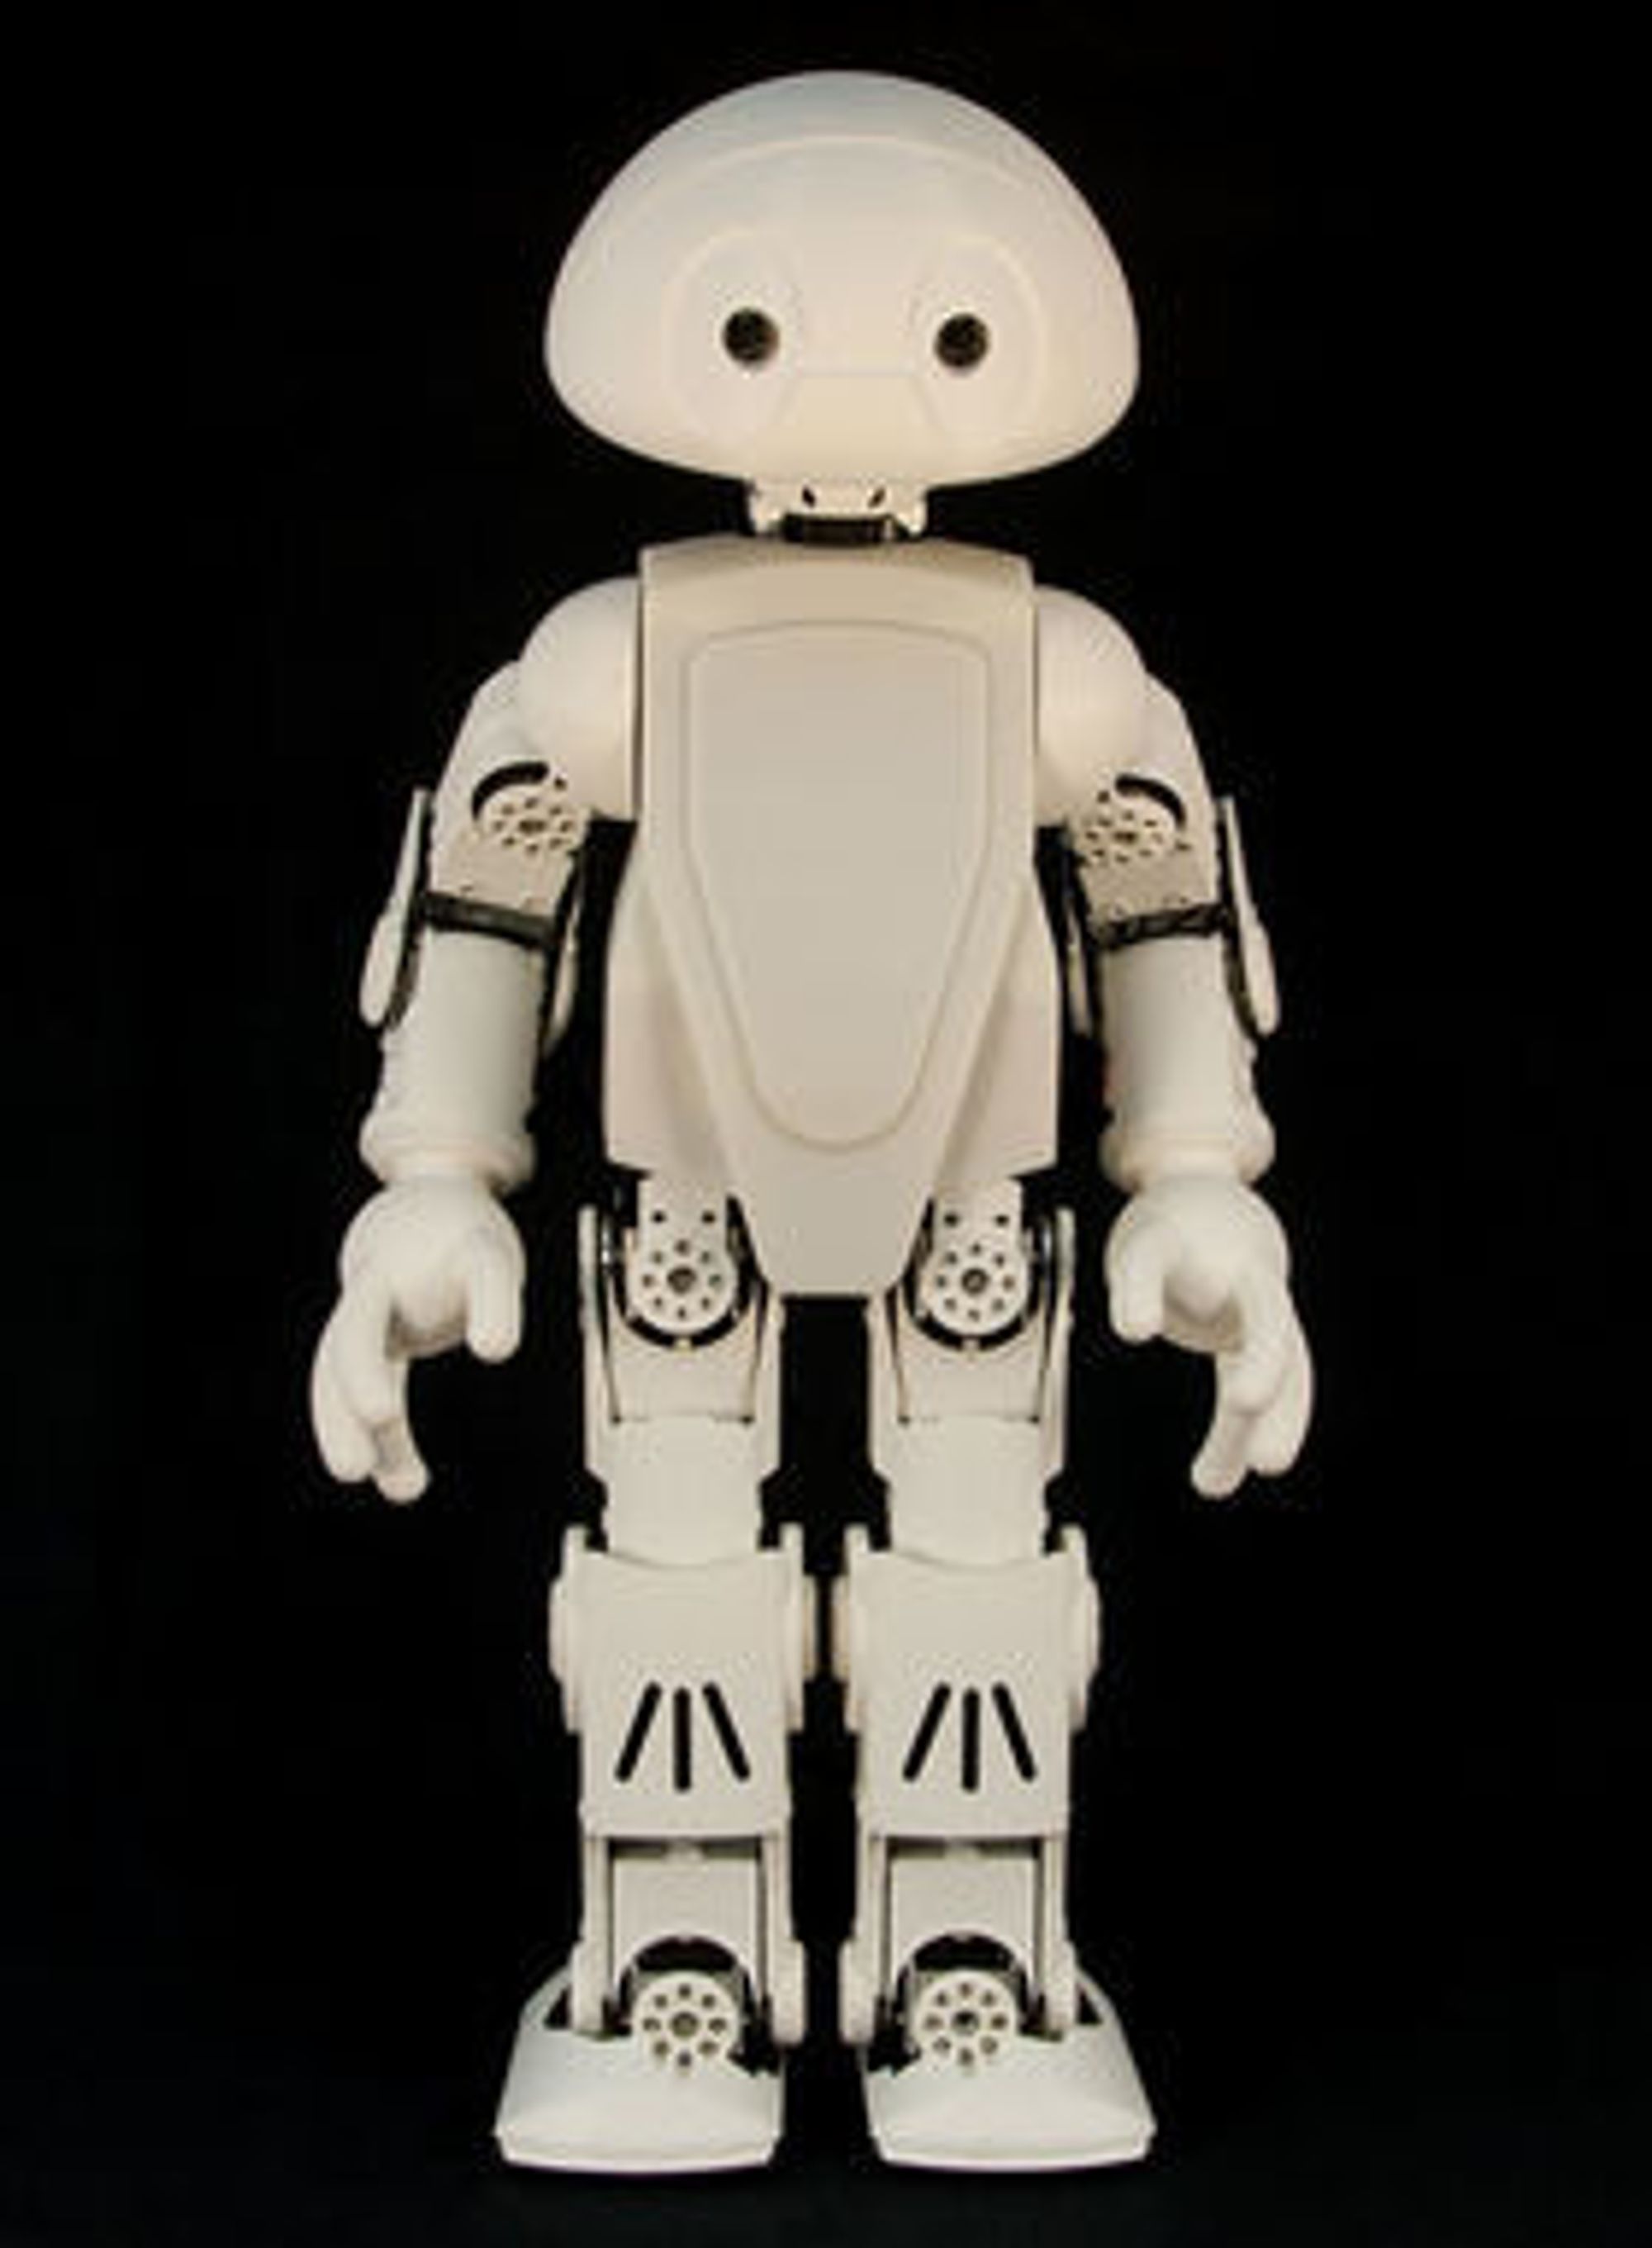 Jimmy-roboten skal kunne brukes til både nytte og moro. Nøyaktig hva kan i stor grad avgjøres av brukerne selv. Eksempler mulig funksjonalitet er å synge, oversette tale og kanskje til og med å servere eieren en kald øl.